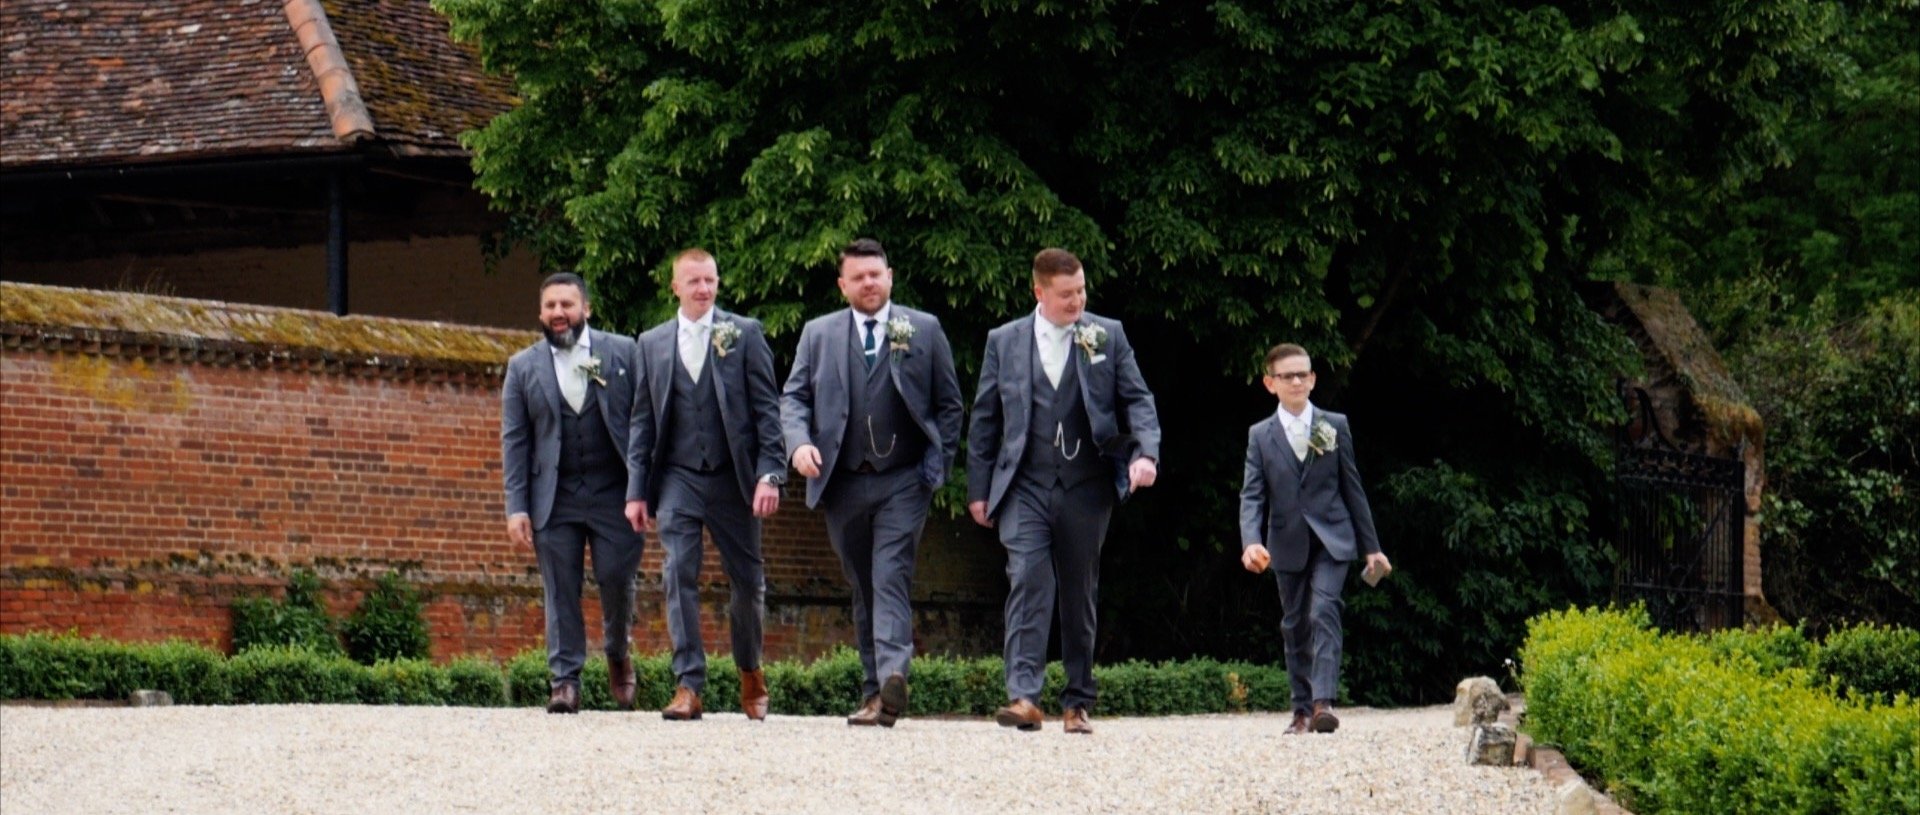 The groomsmen at Leez Priory essex wedding videos.jpg